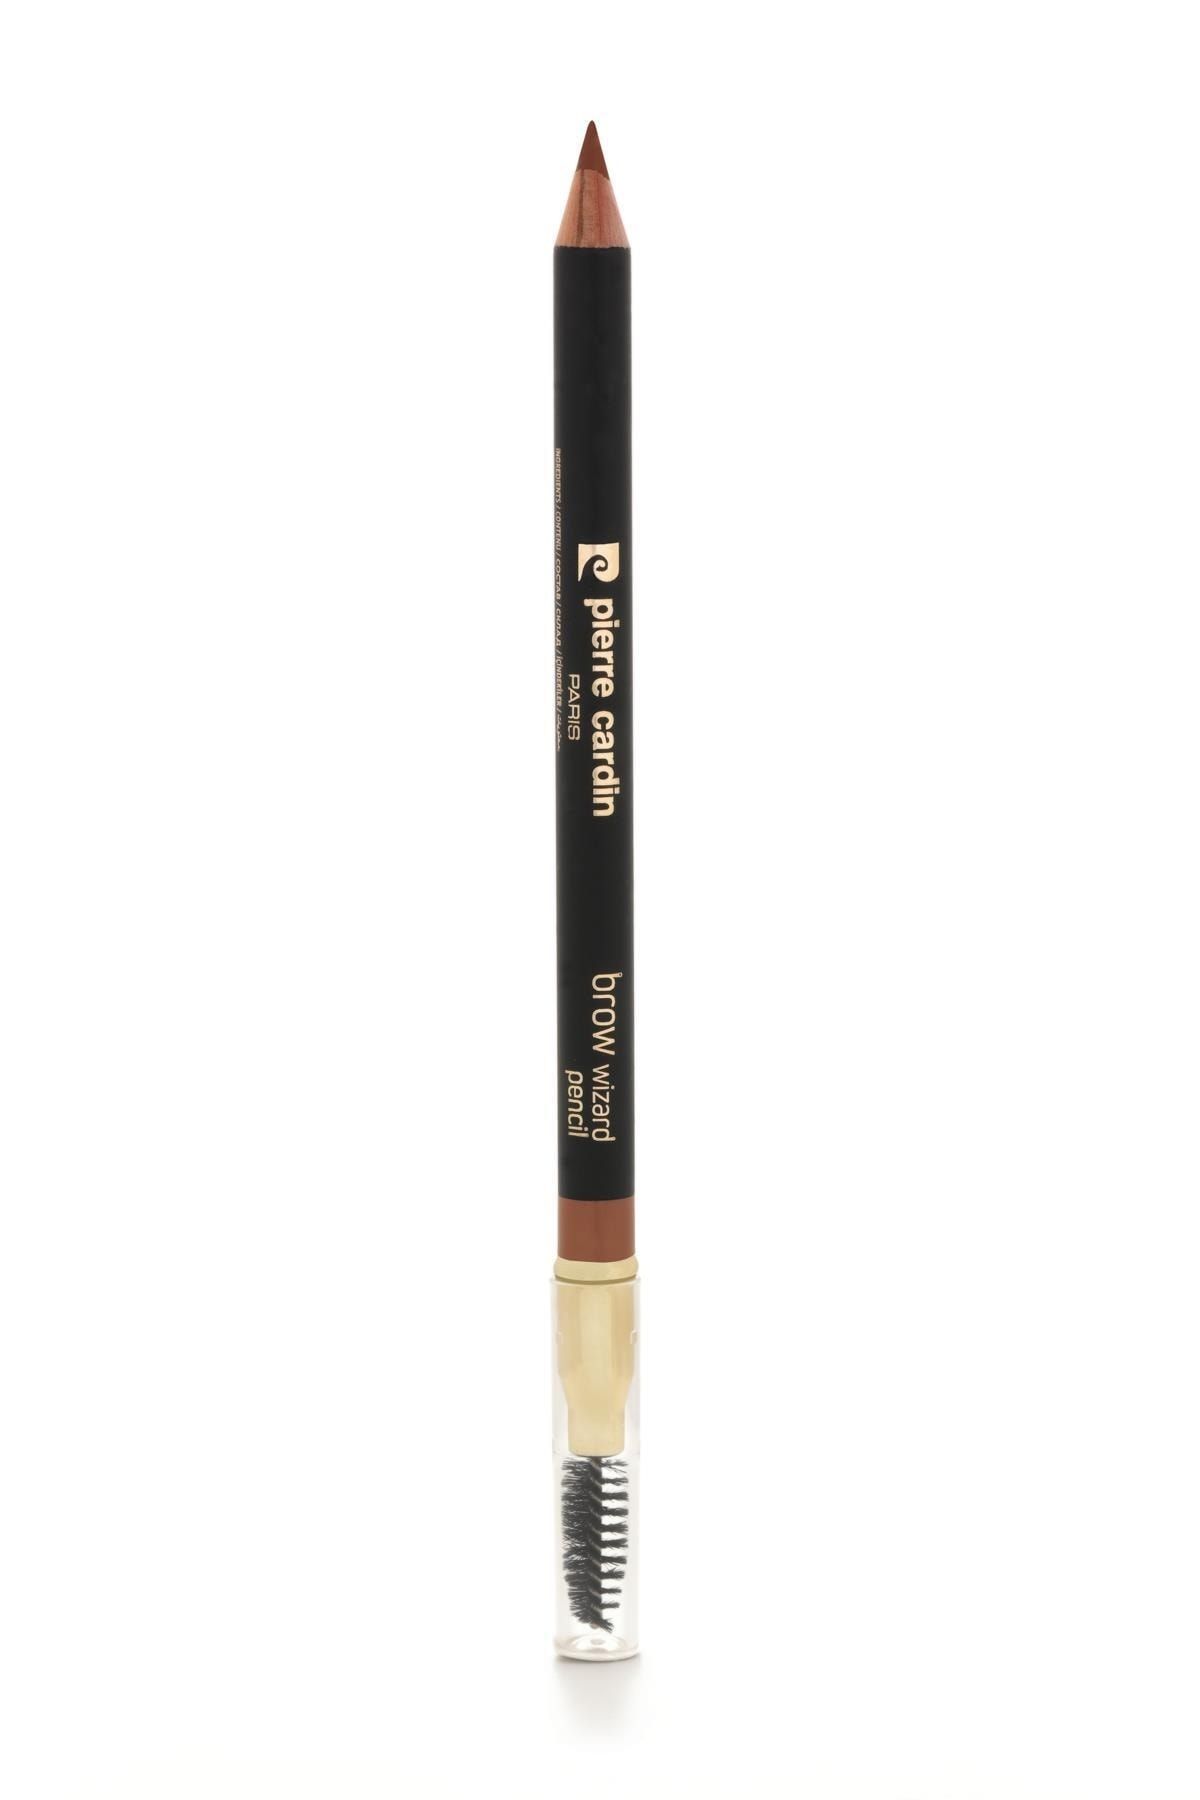 Pierre Cardin Brow Wizard Pencil Kaş Kalemi - Cool Light Blonde 619